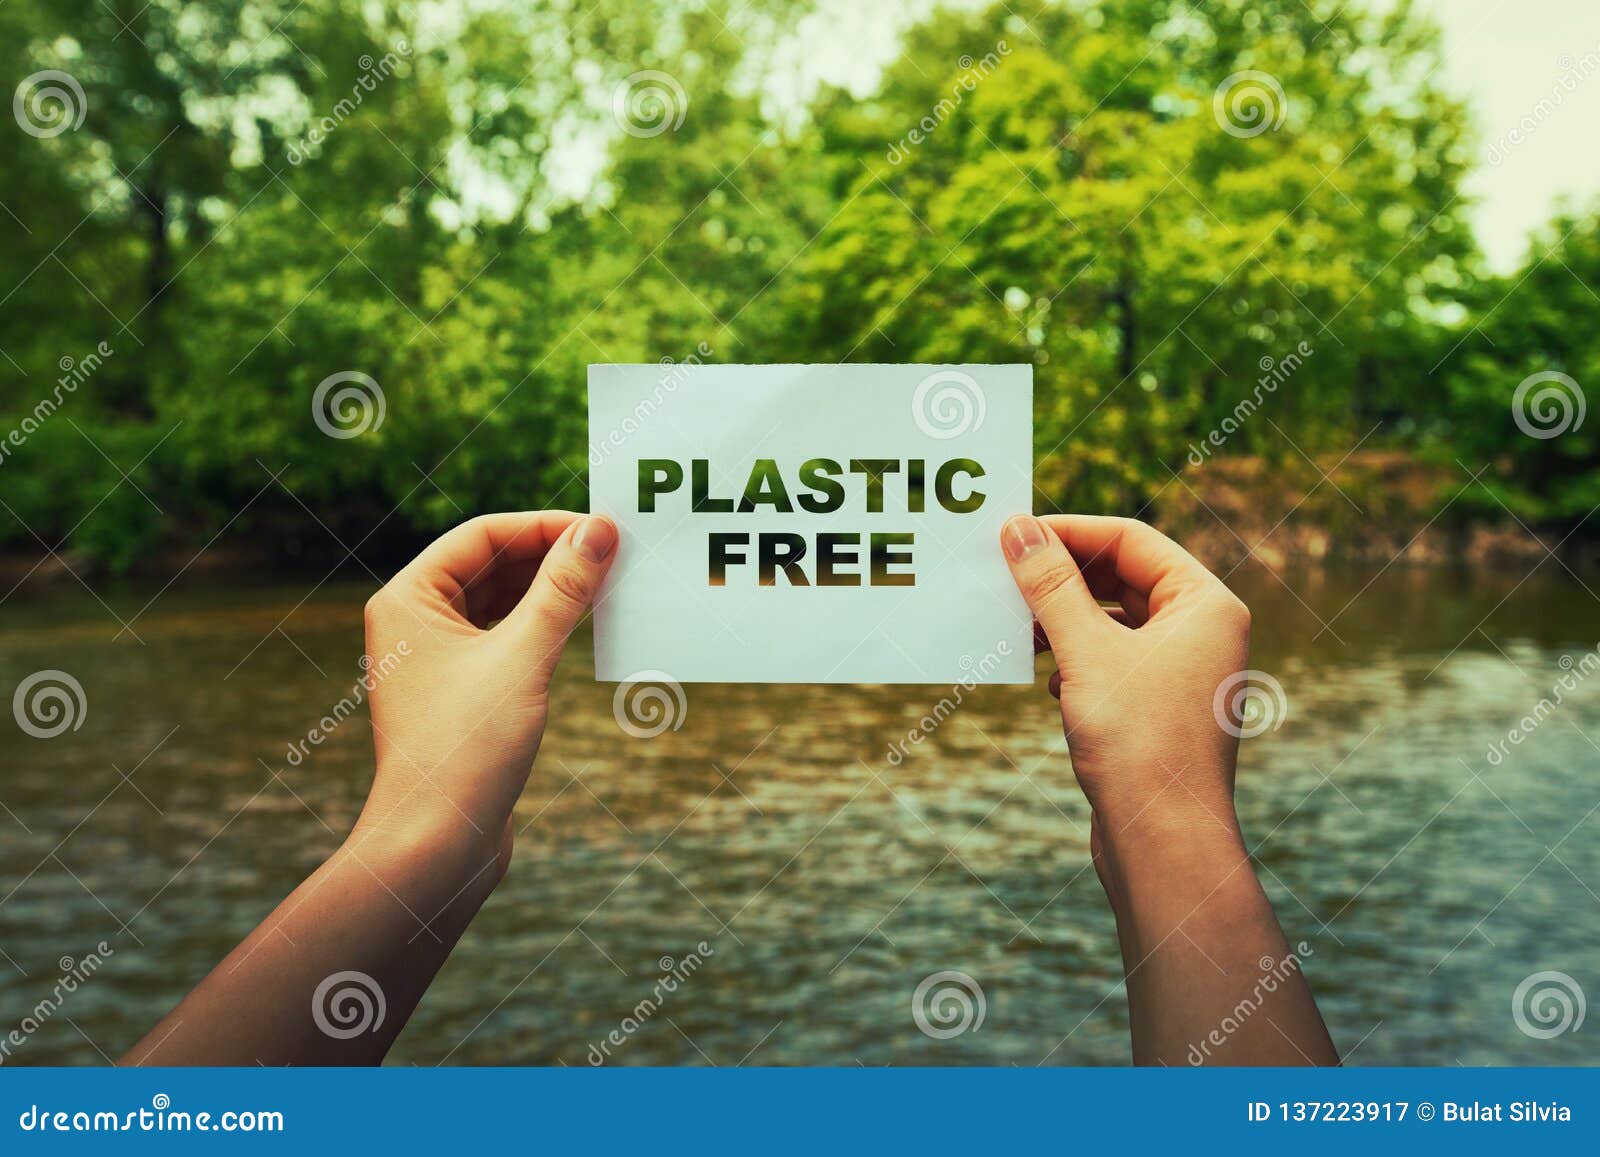 plastic free zone